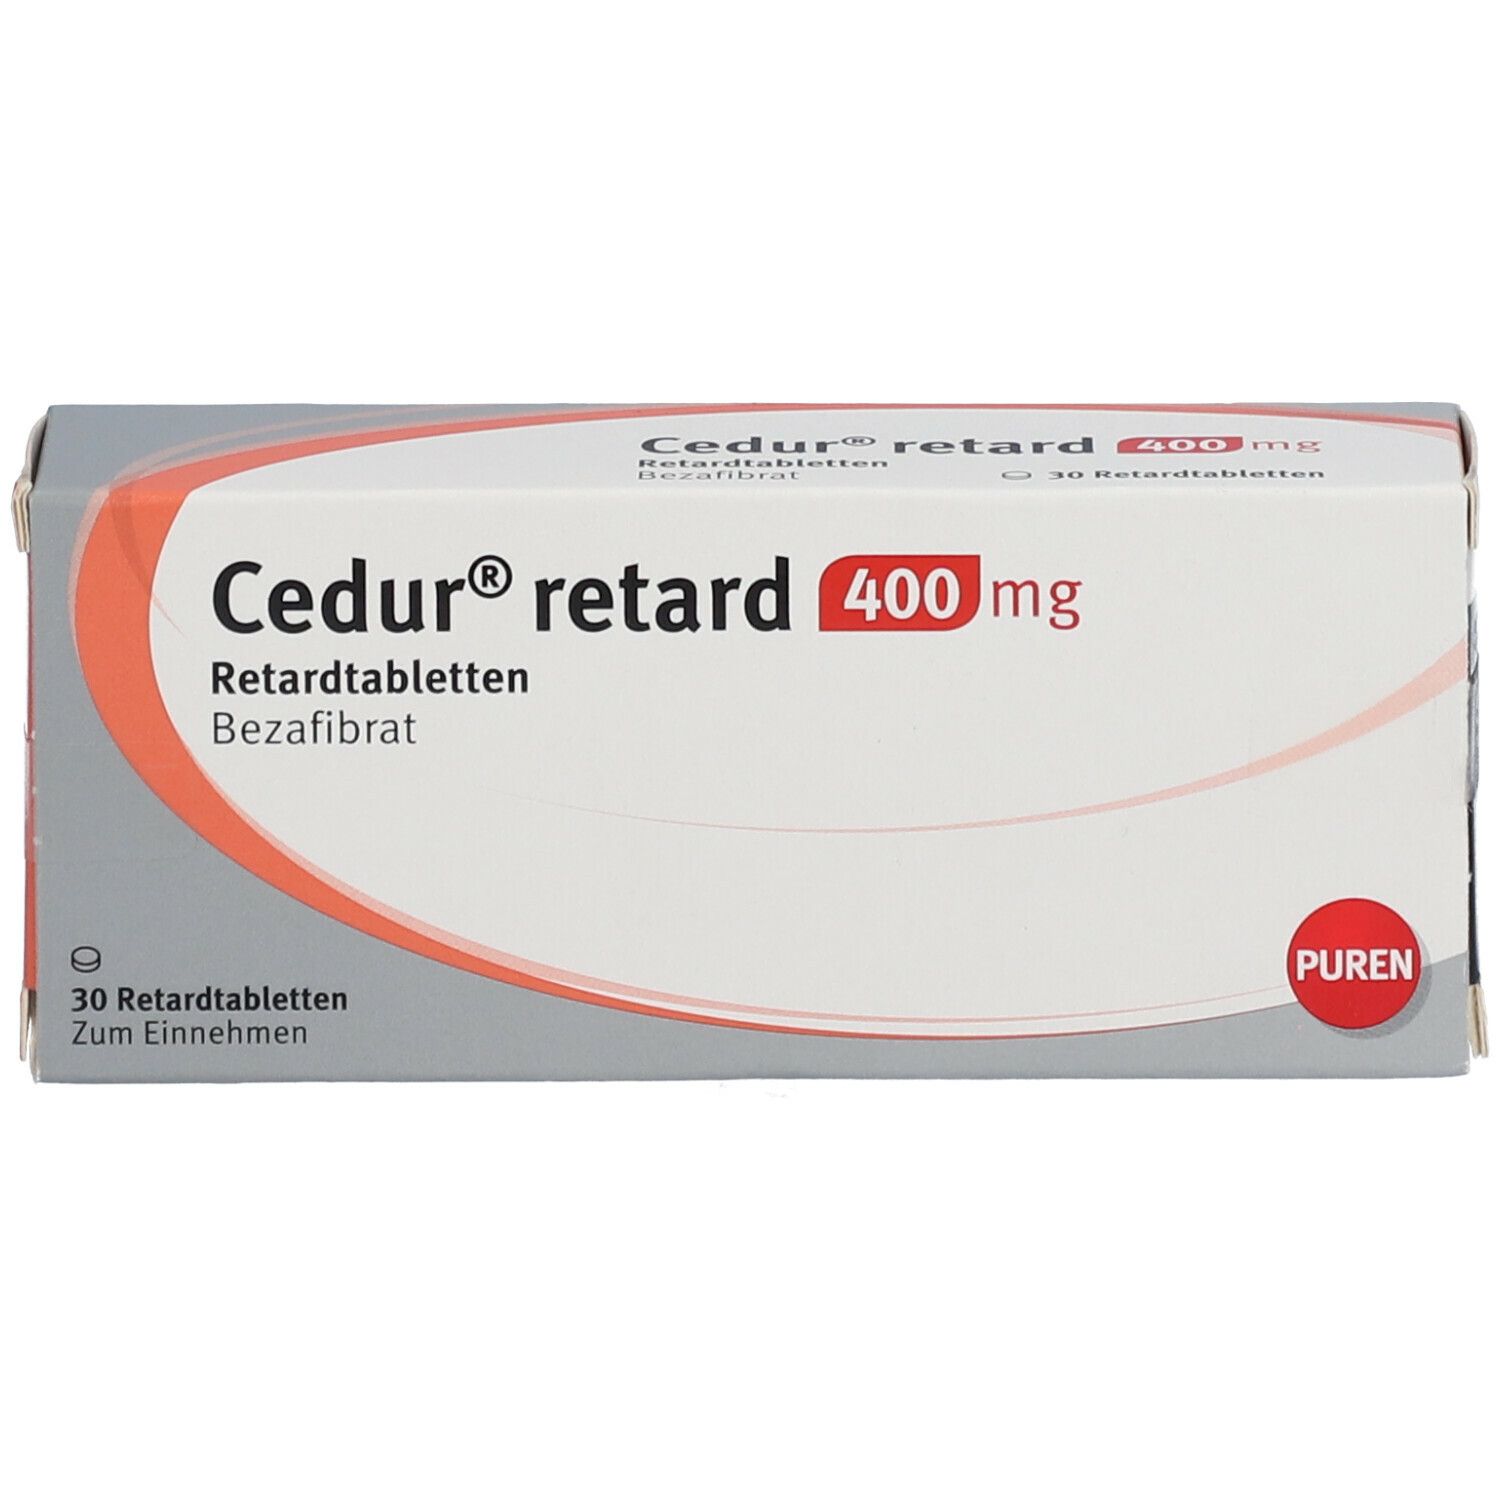 Cedur® retard 400 mg